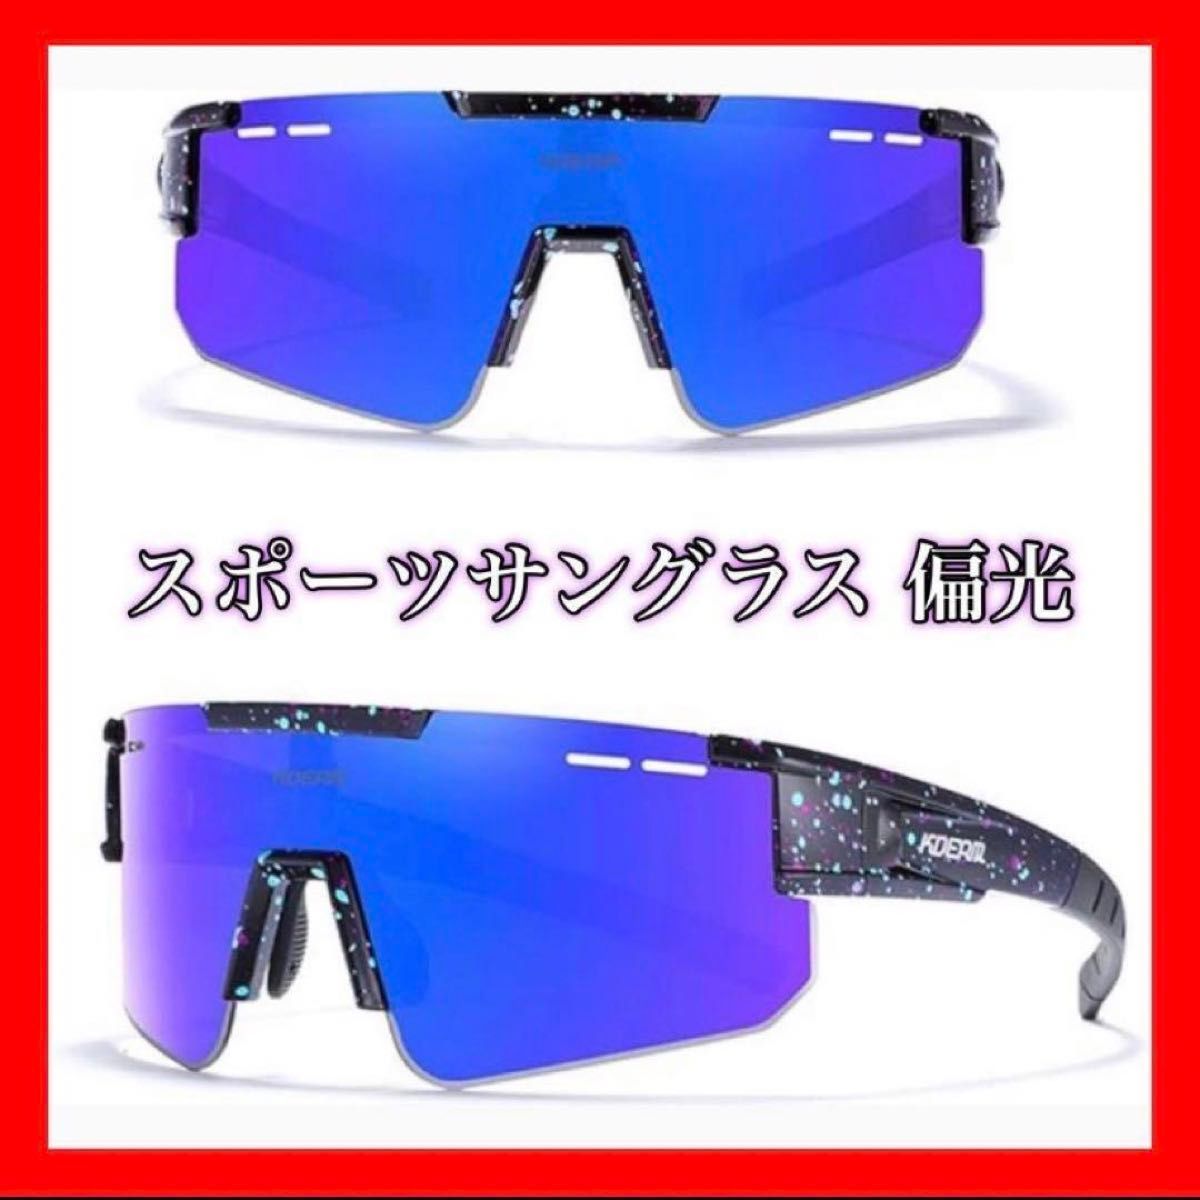 【新品･未使用】サングラス メンズ 偏光 スポーツサングラス スポーツメガネ アウトドア スポーツ 紫外線 運転 サイクリング